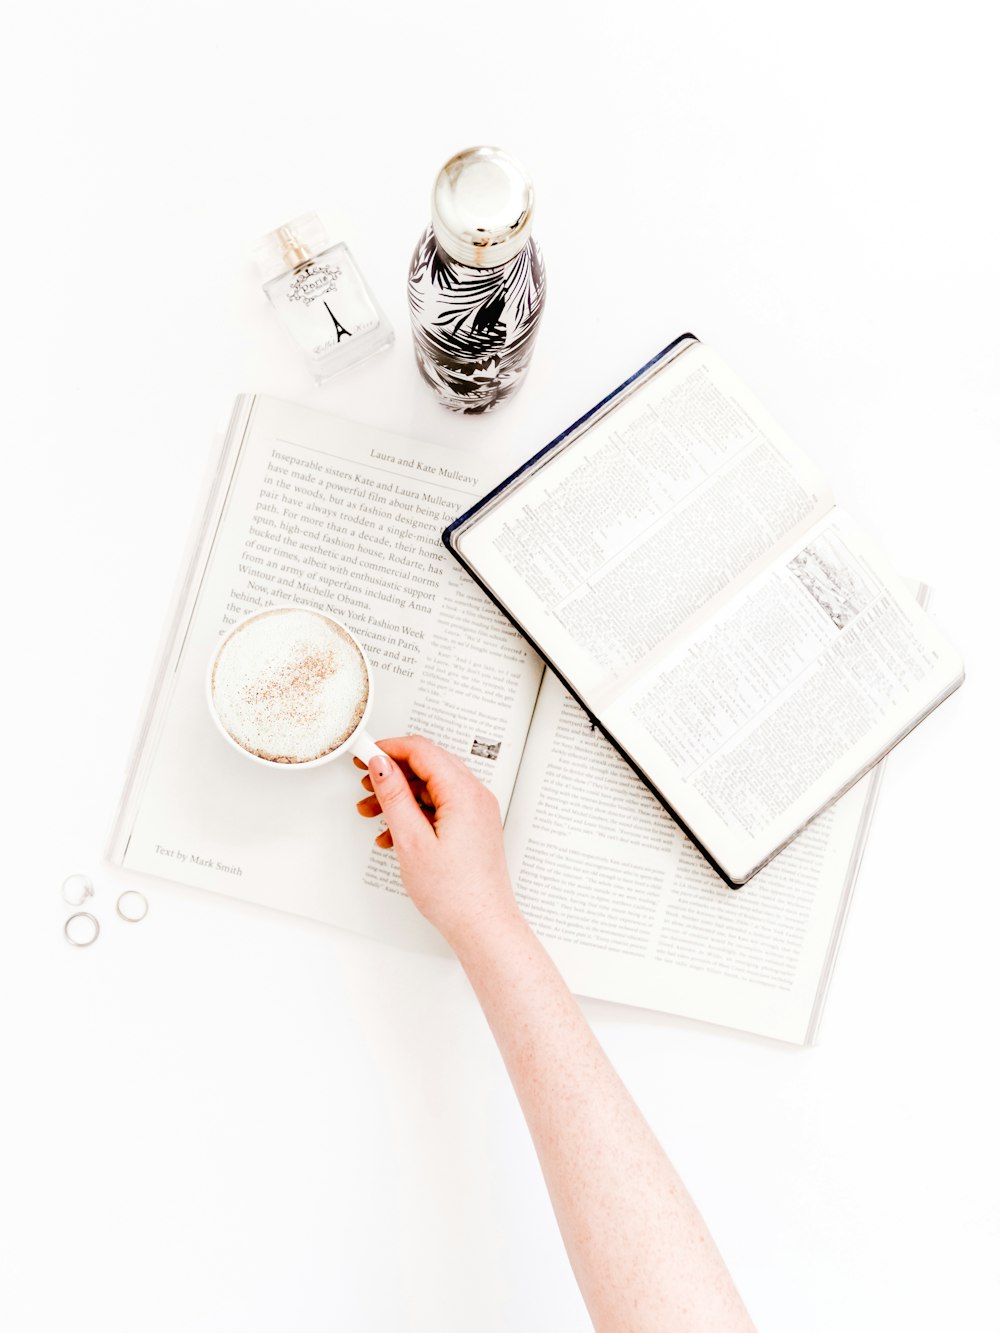 cappuccino in white mug on open books